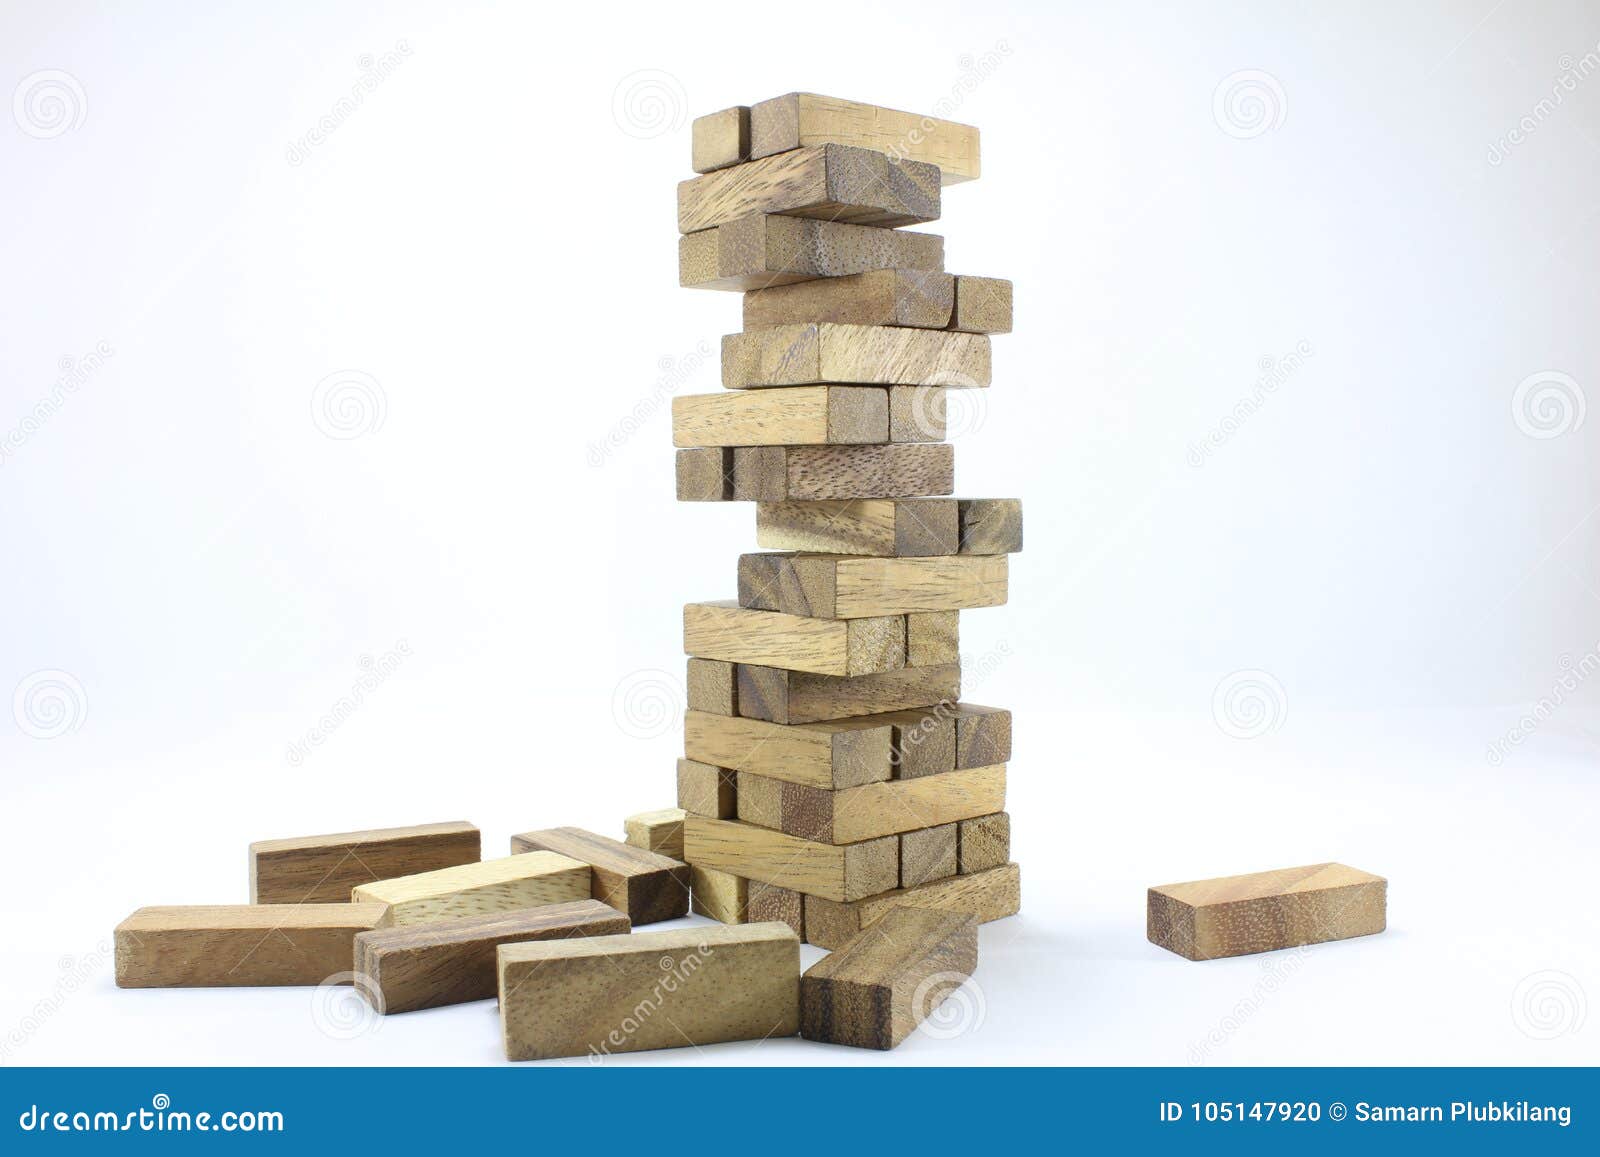 baby building blocks wooden